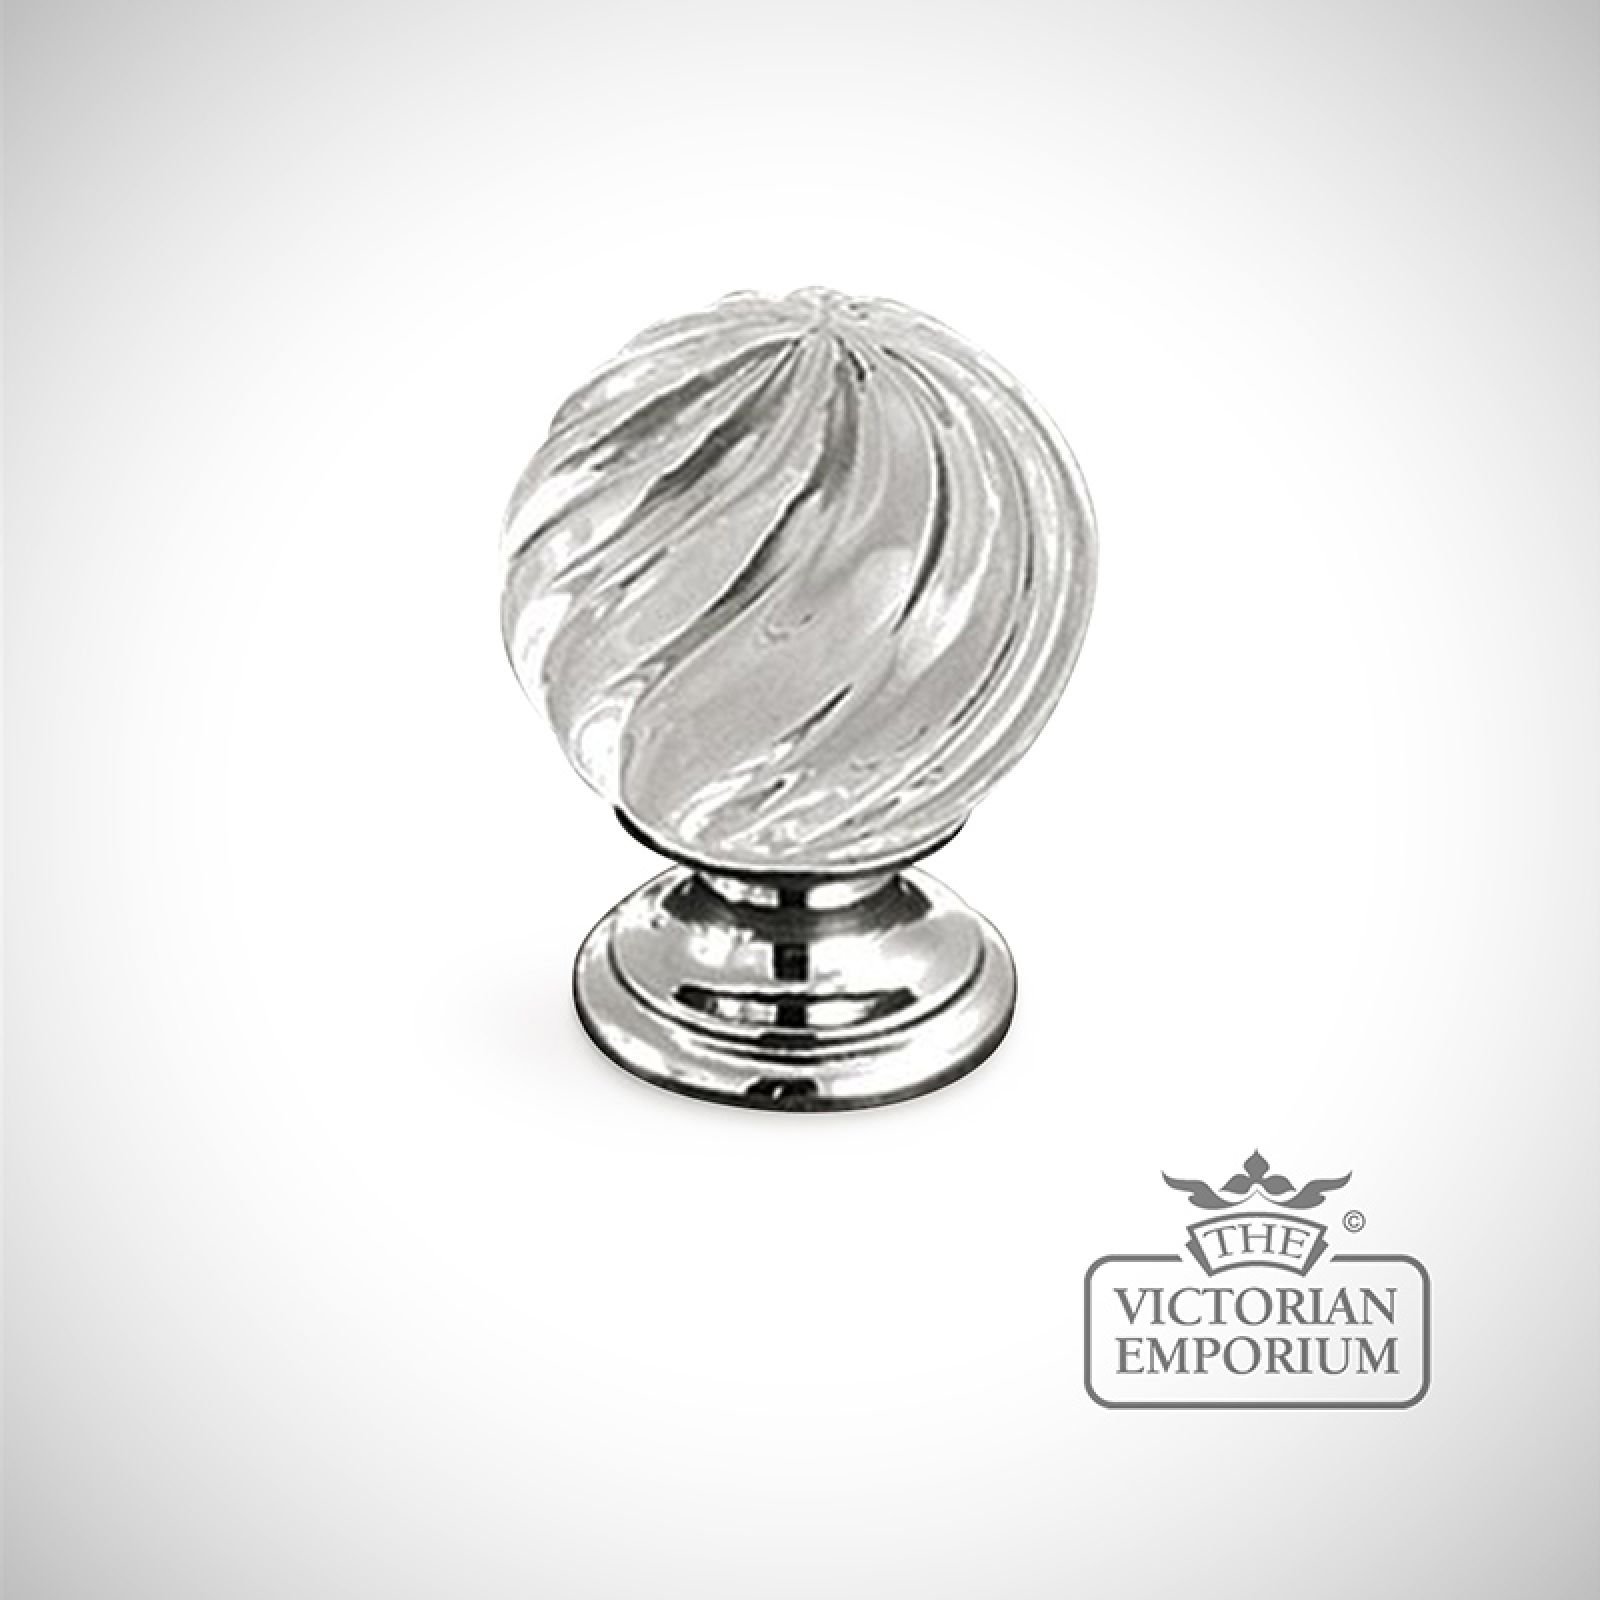 Swirl glass knob